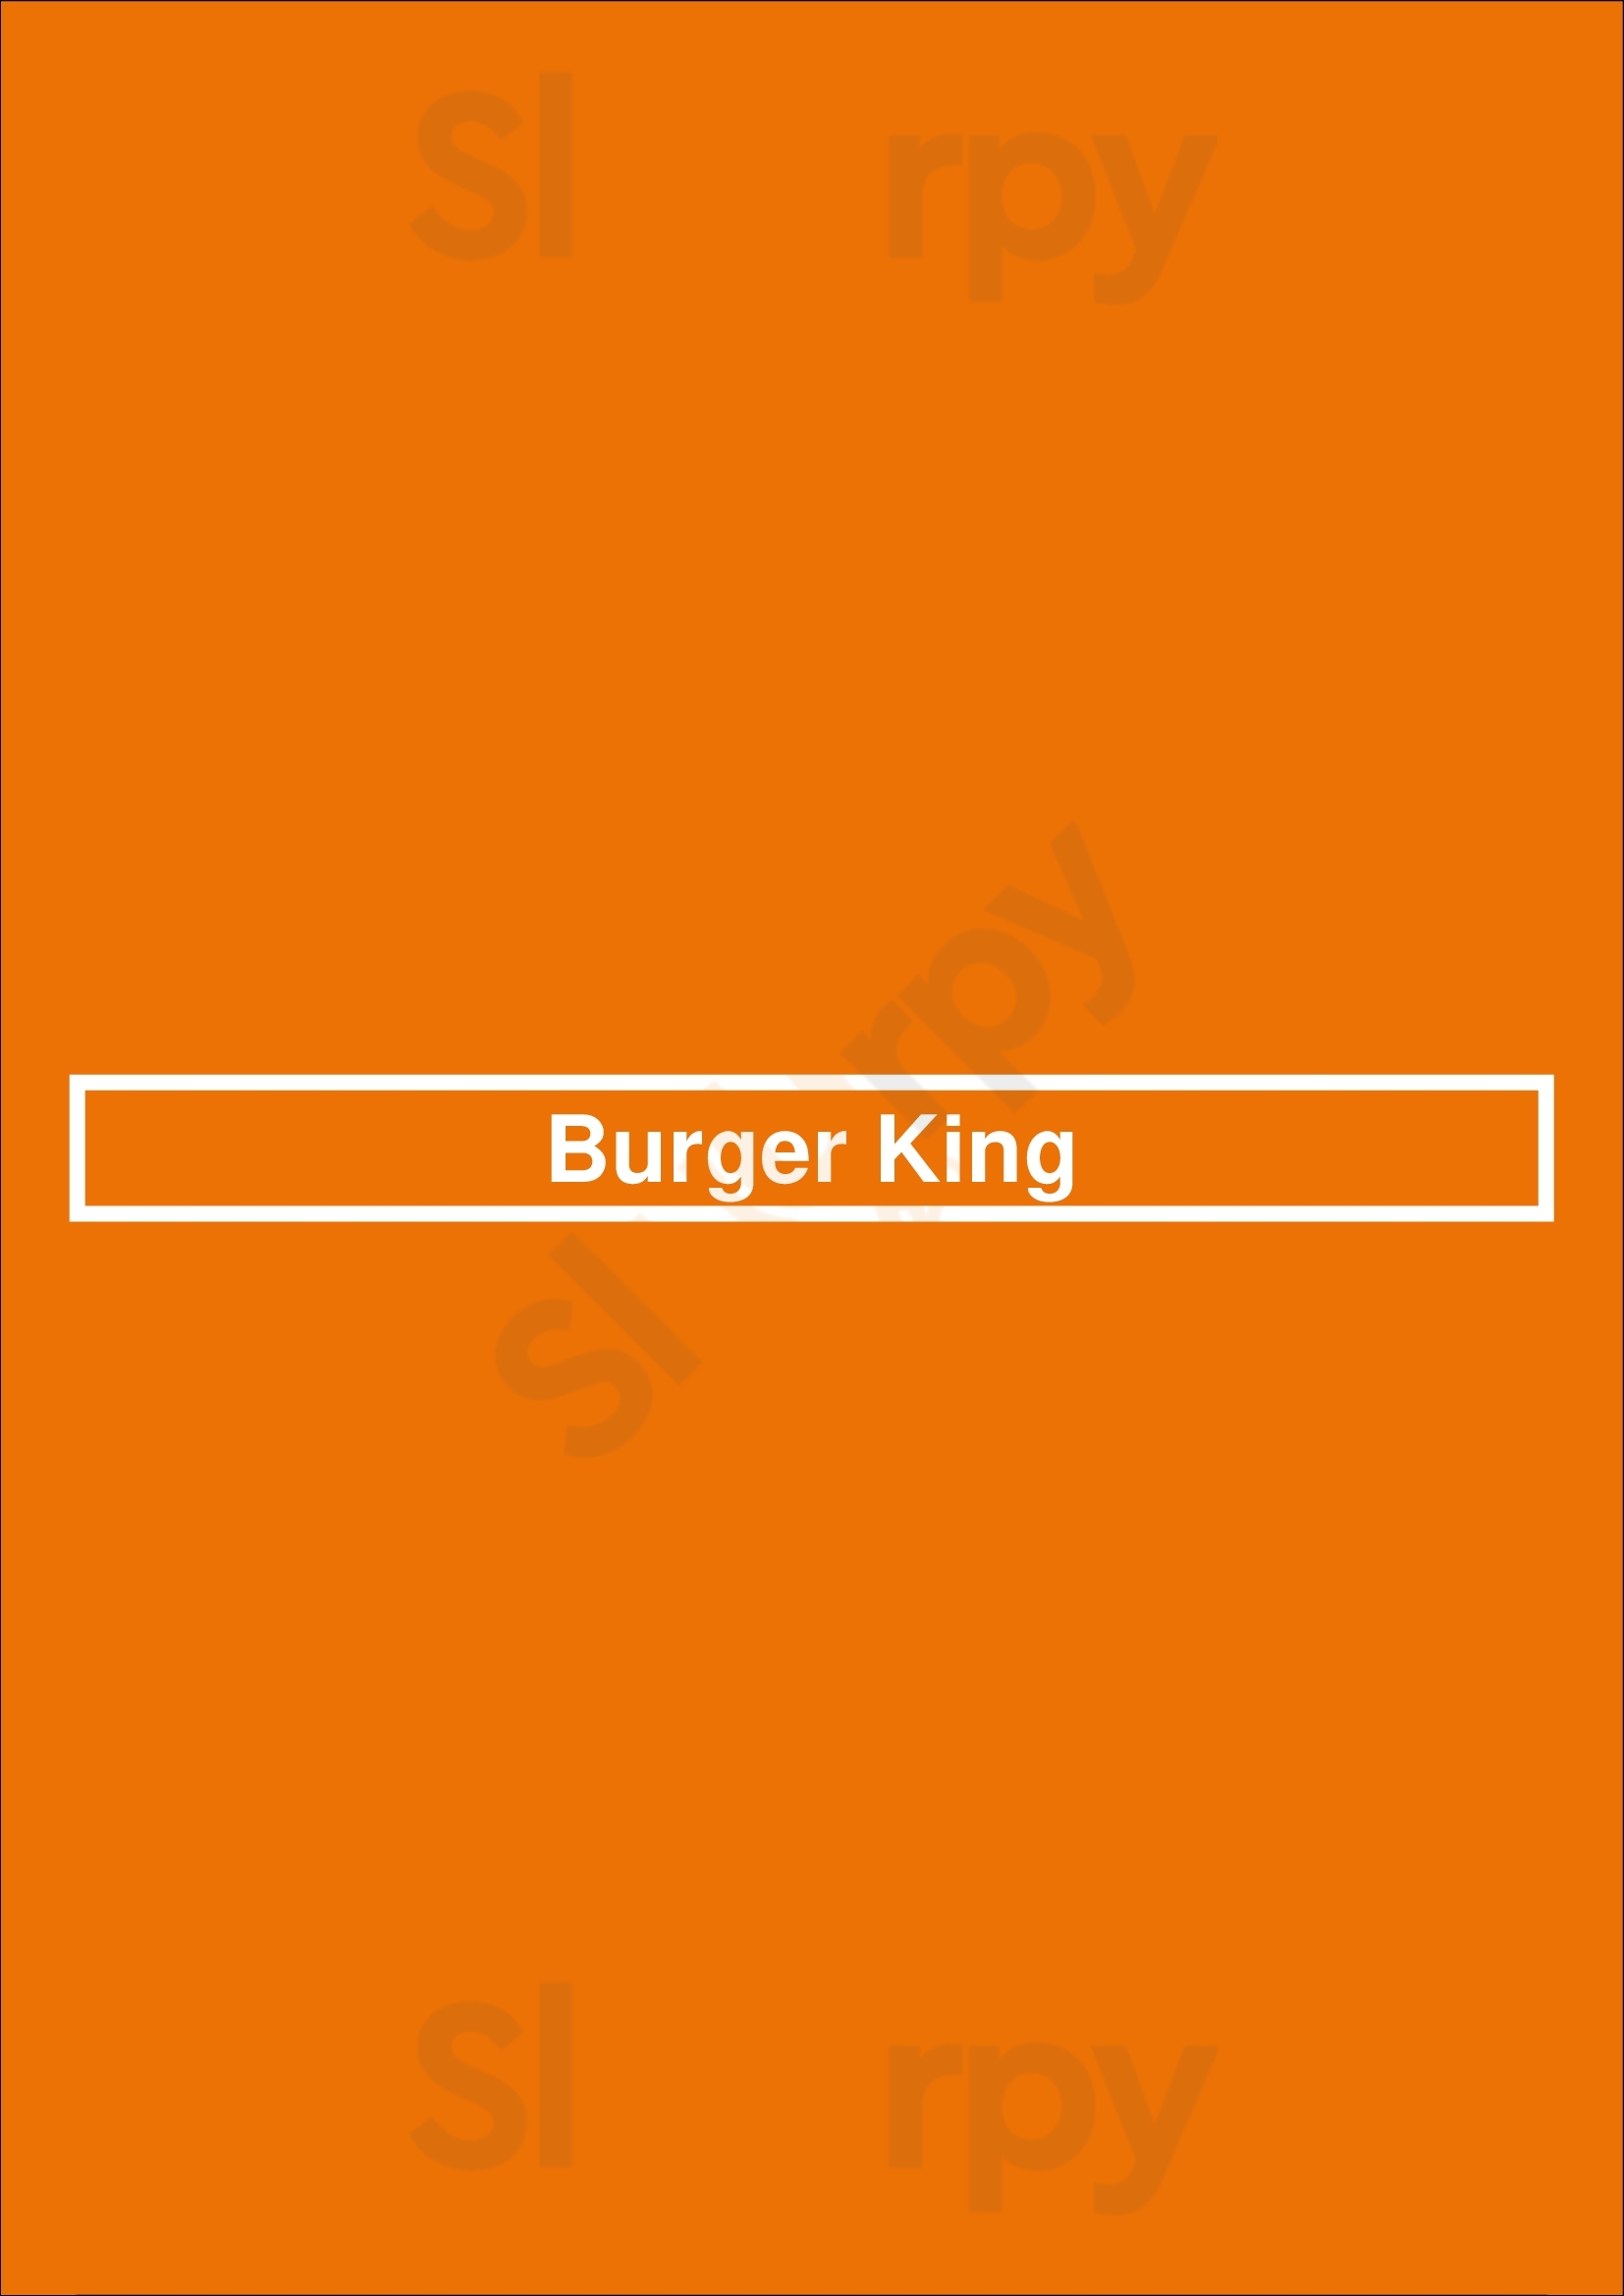 Burger King Middletown Menu - 1